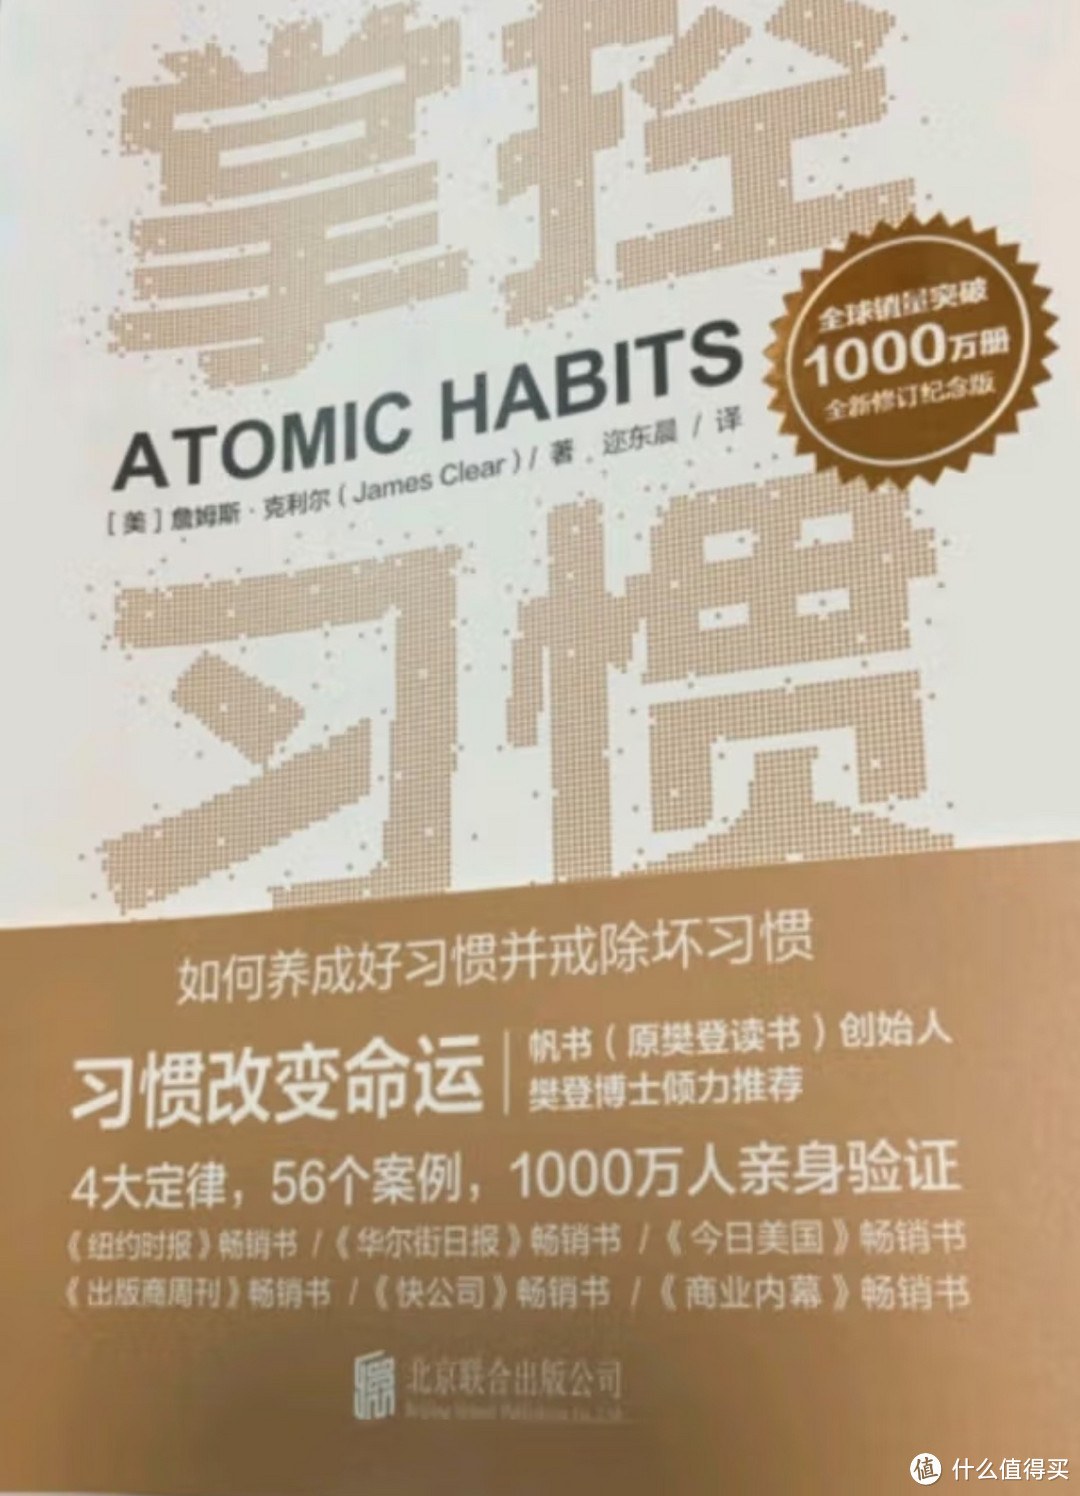 掌控习惯 养成好习惯 詹姆斯克莱尔 原子习惯 Atomic Habits中文版 樊登读书会 得到 吴晓波推荐